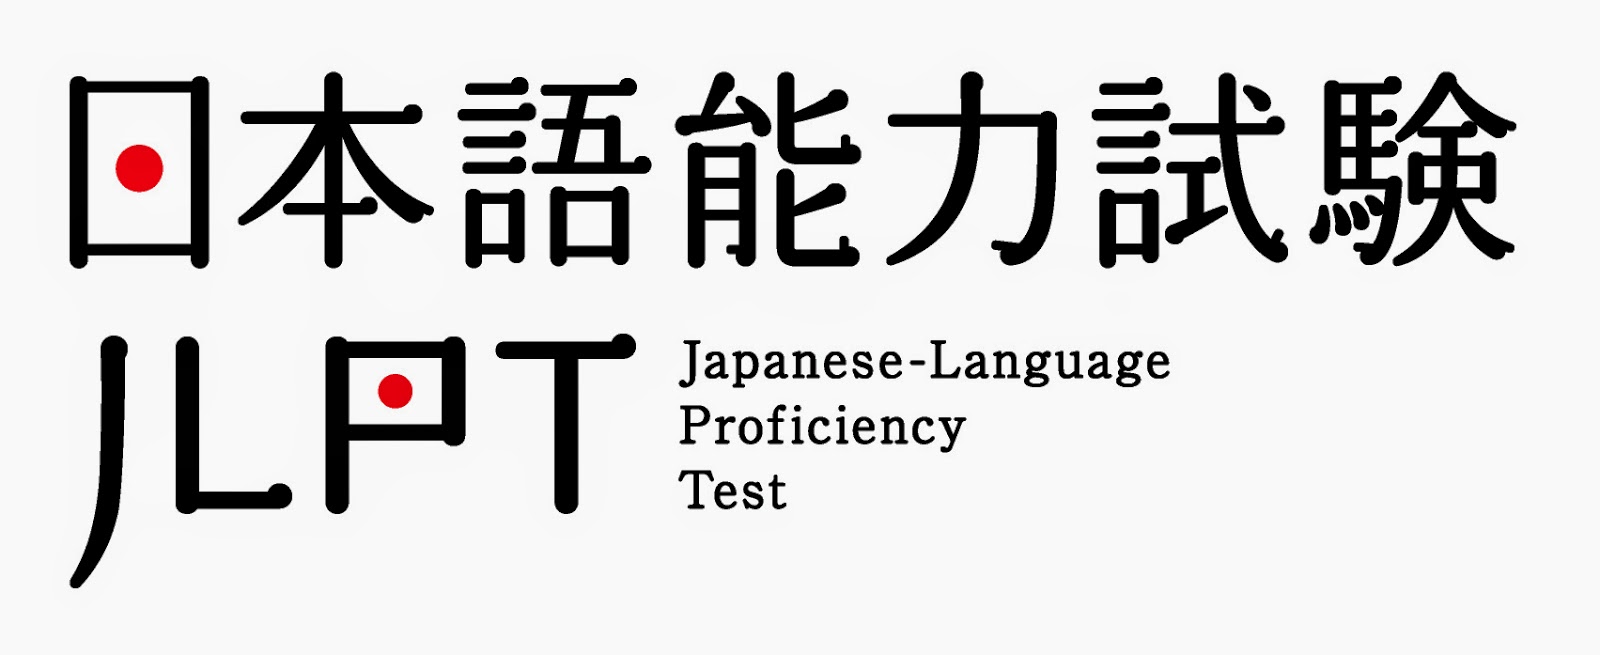 今日はJLPT日本語能力試験でした。